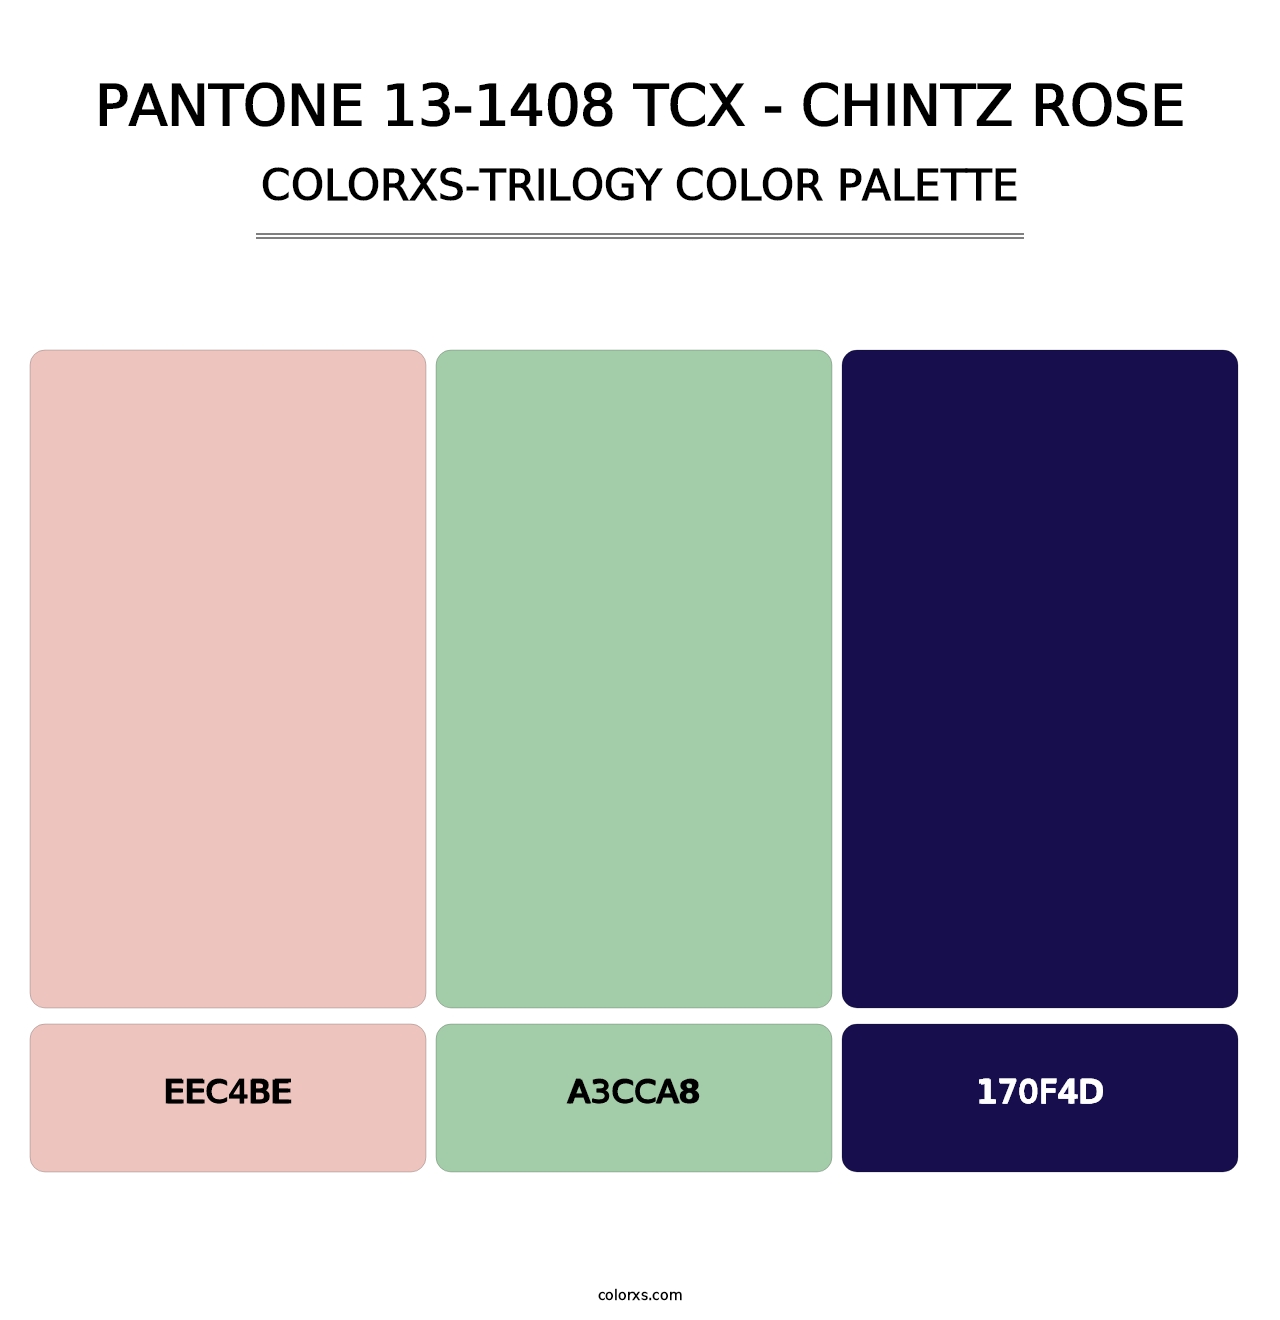 PANTONE 13-1408 TCX - Chintz Rose - Colorxs Trilogy Palette